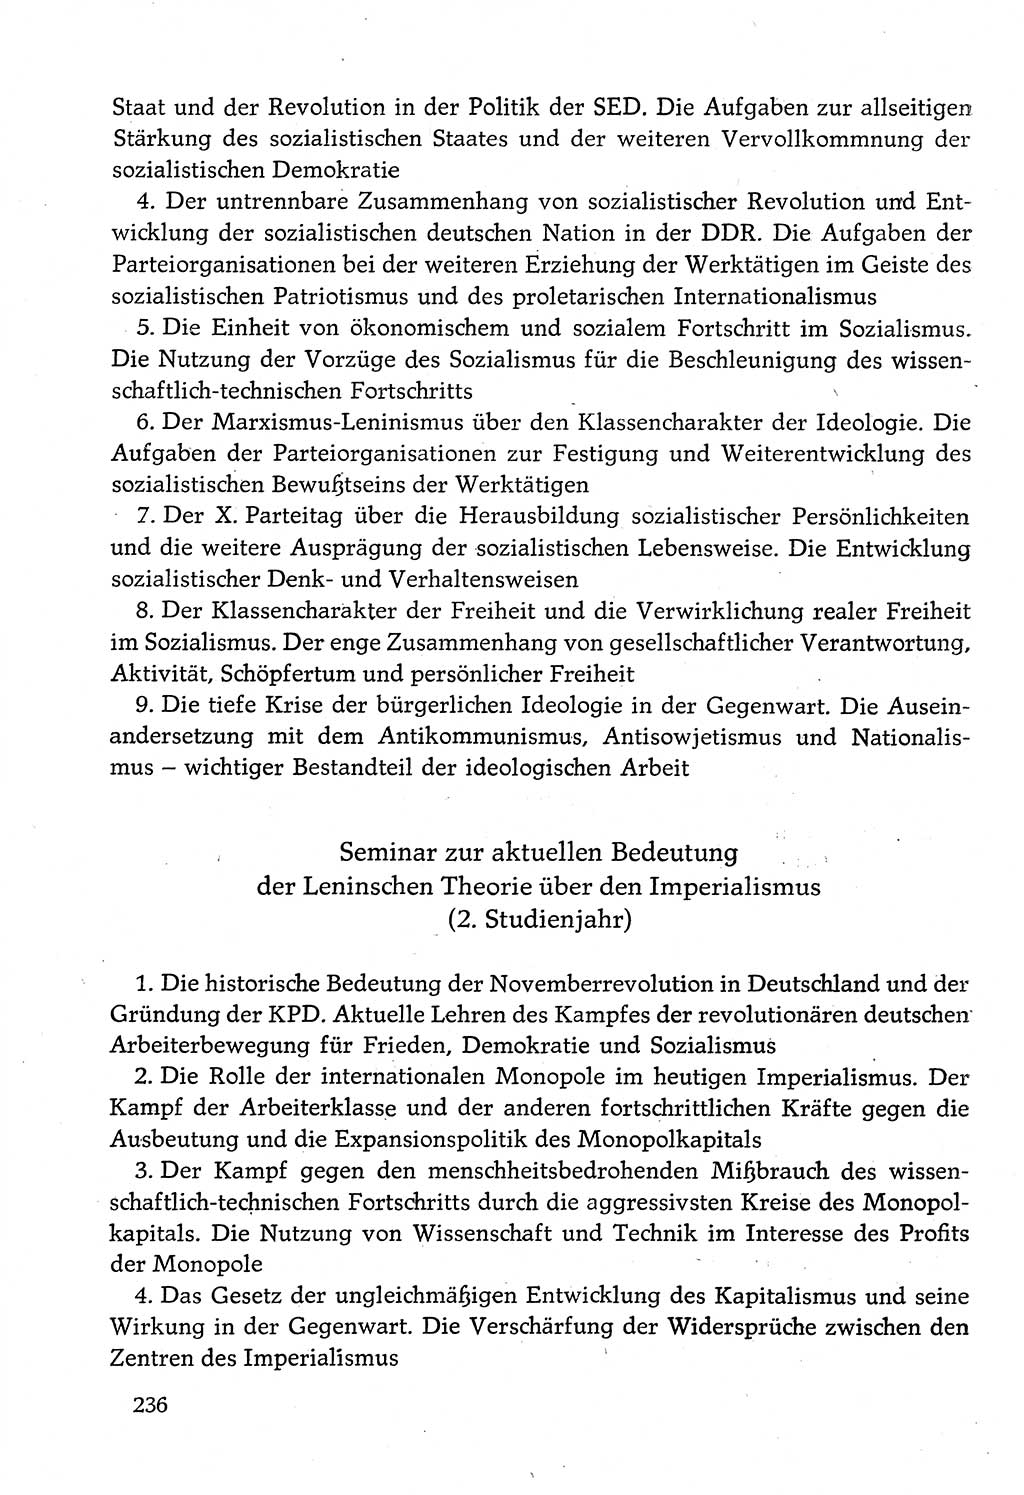 Dokumente der Sozialistischen Einheitspartei Deutschlands (SED) [Deutsche Demokratische Republik (DDR)] 1982-1983, Seite 236 (Dok. SED DDR 1982-1983, S. 236)